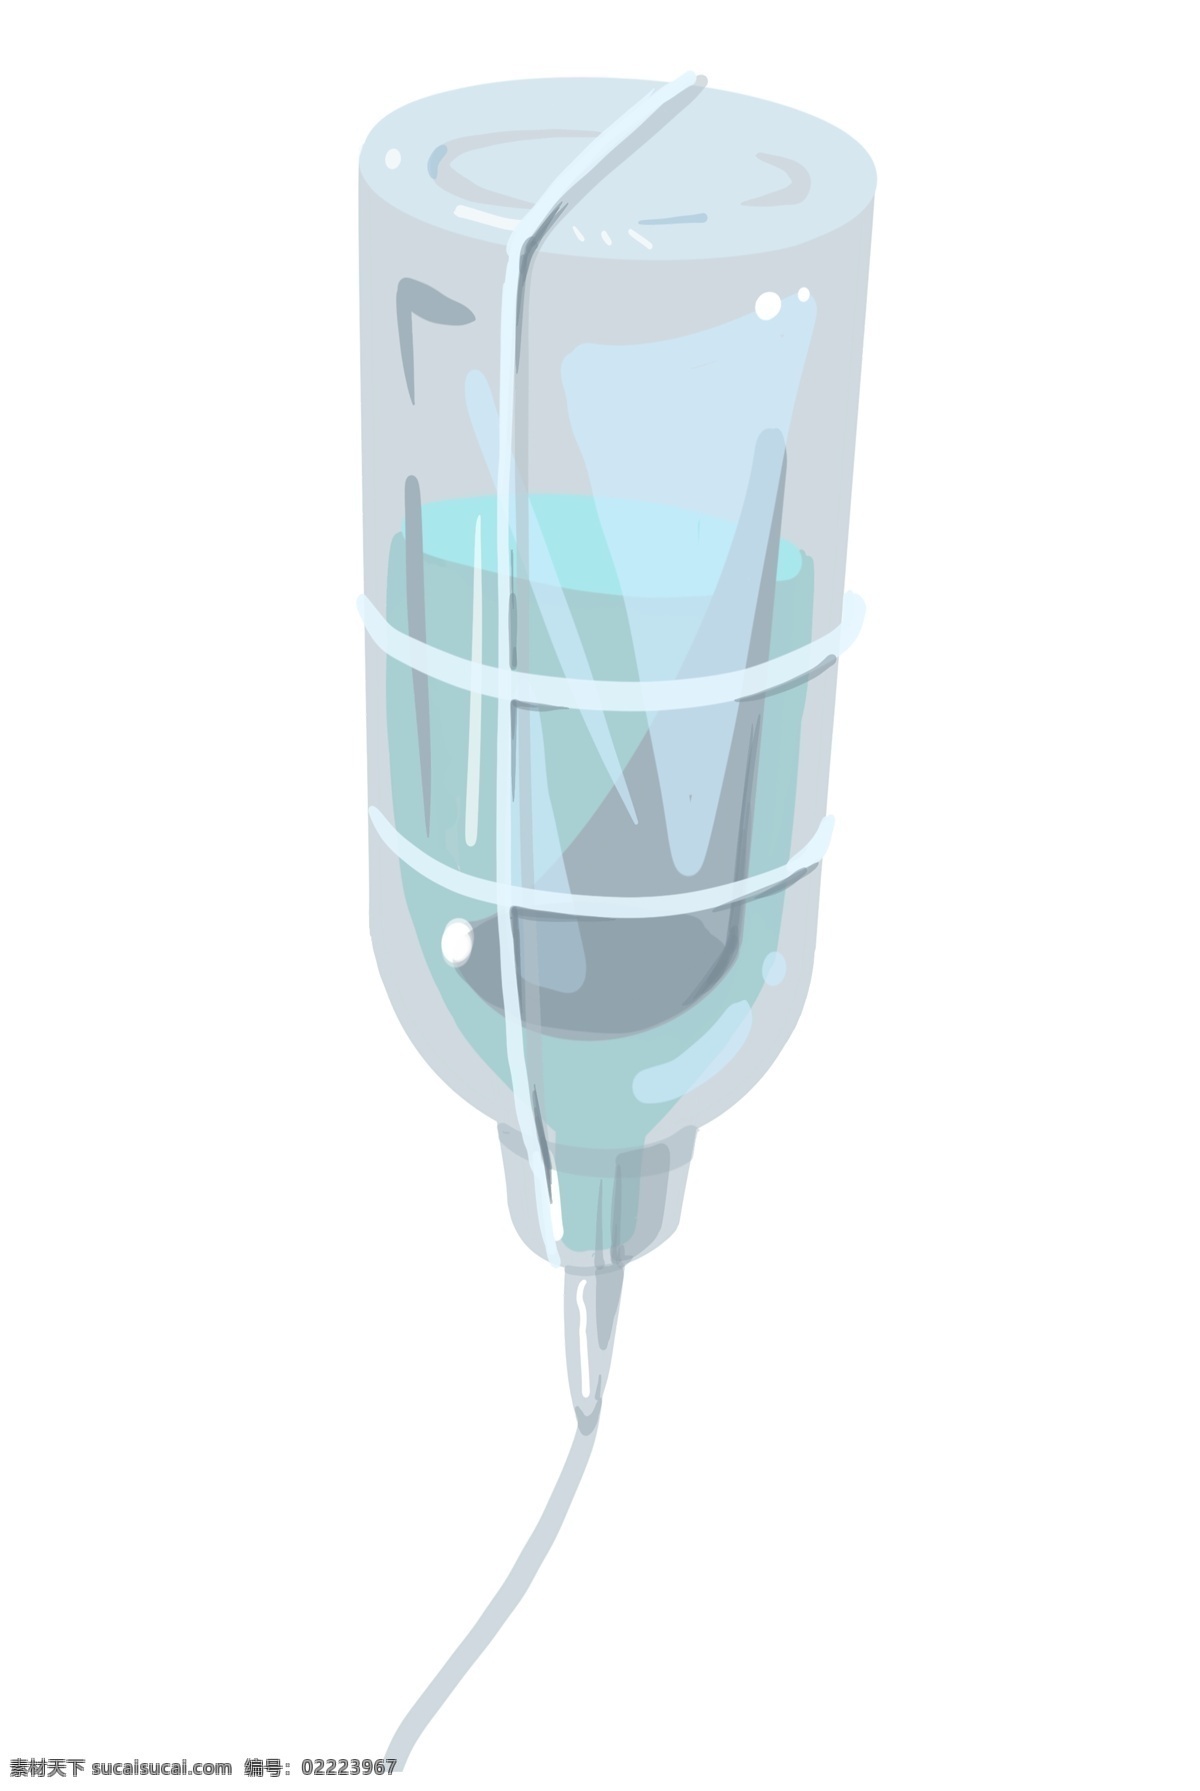 输液瓶 液体 插画 输液治疗 病人 医疗温升 公共医疗 液体药物 输液插图 药